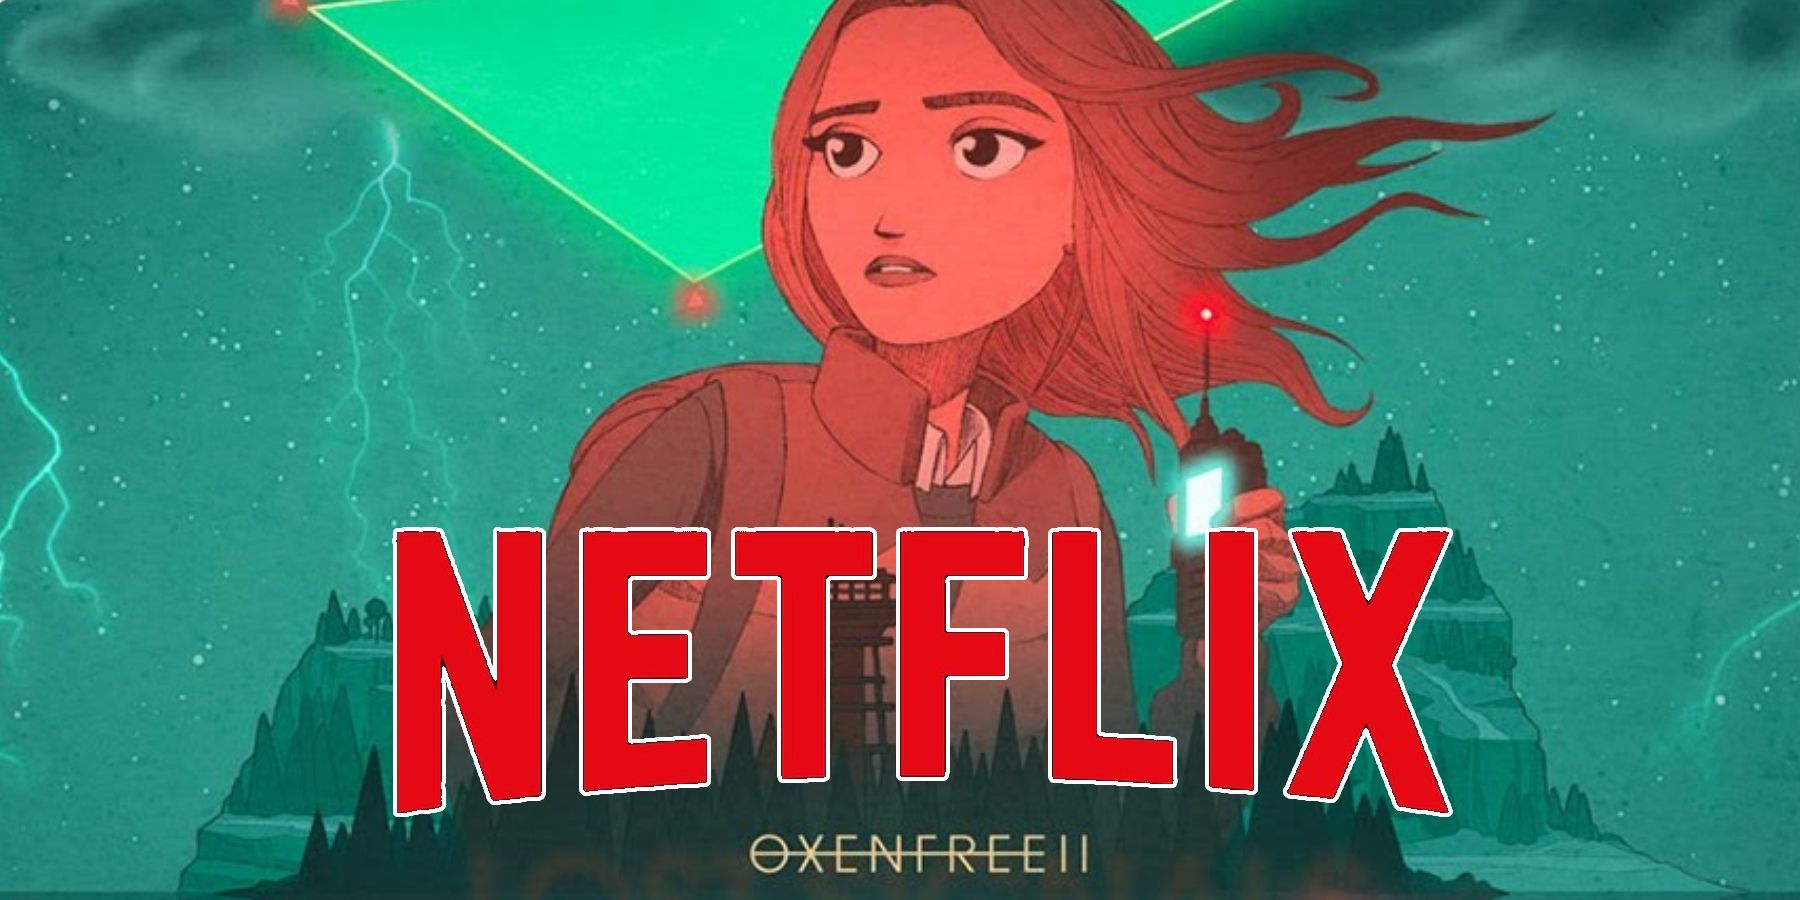 Netflix förvärvar Oxenfree Dev Studio